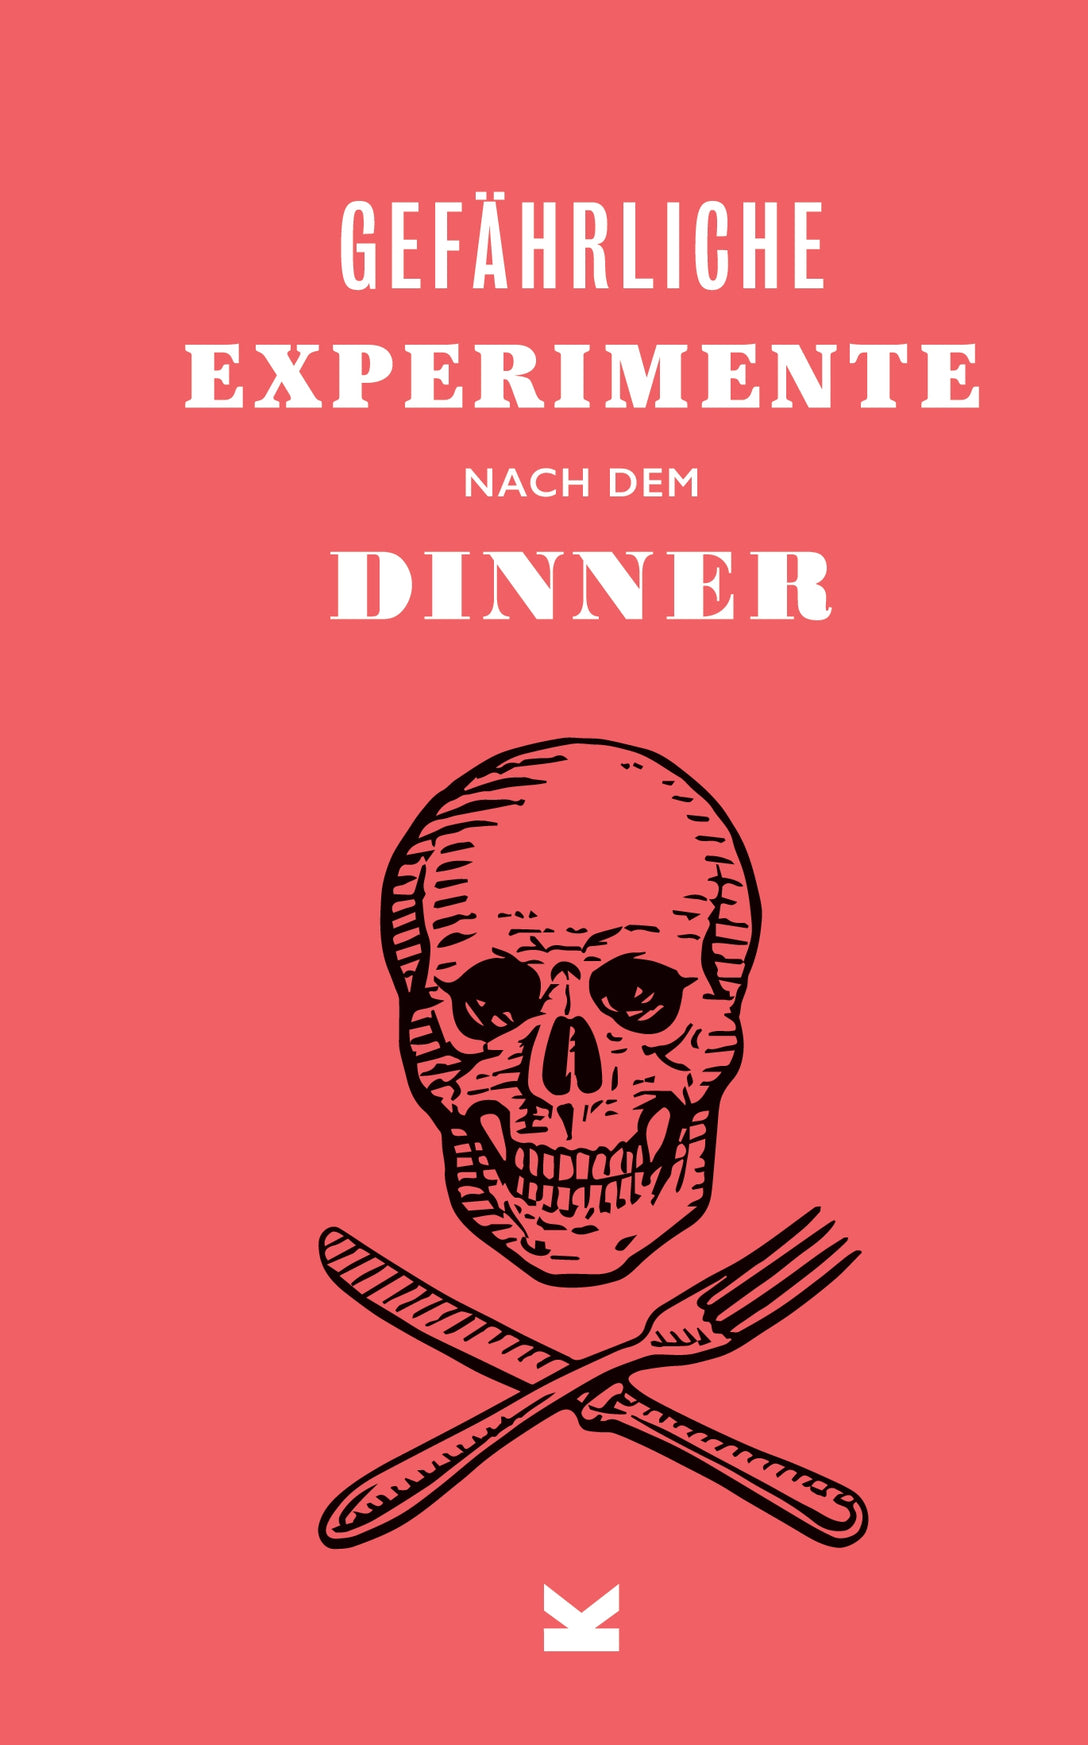 Gefährliche Experimente nach dem Dinner by Frederik Kugler, Angus Hyland, Dave Hopkins, Kendra Wilson